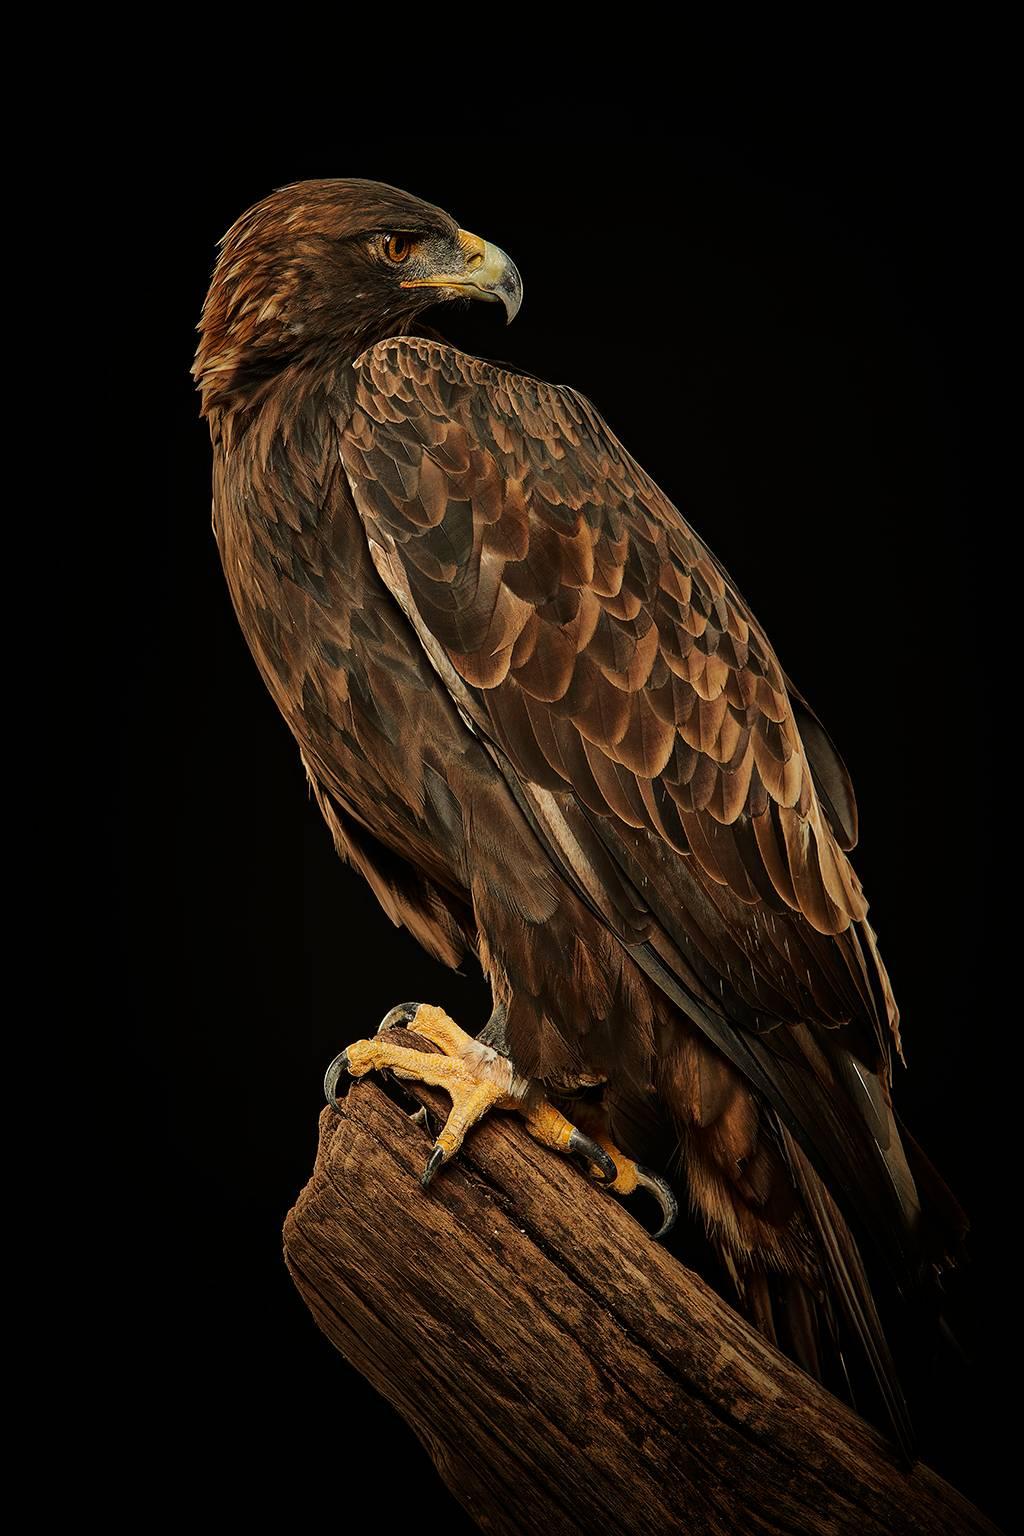 Chris Gordaneer Color Photograph - Birds of Prey Golden Eagle No. 22